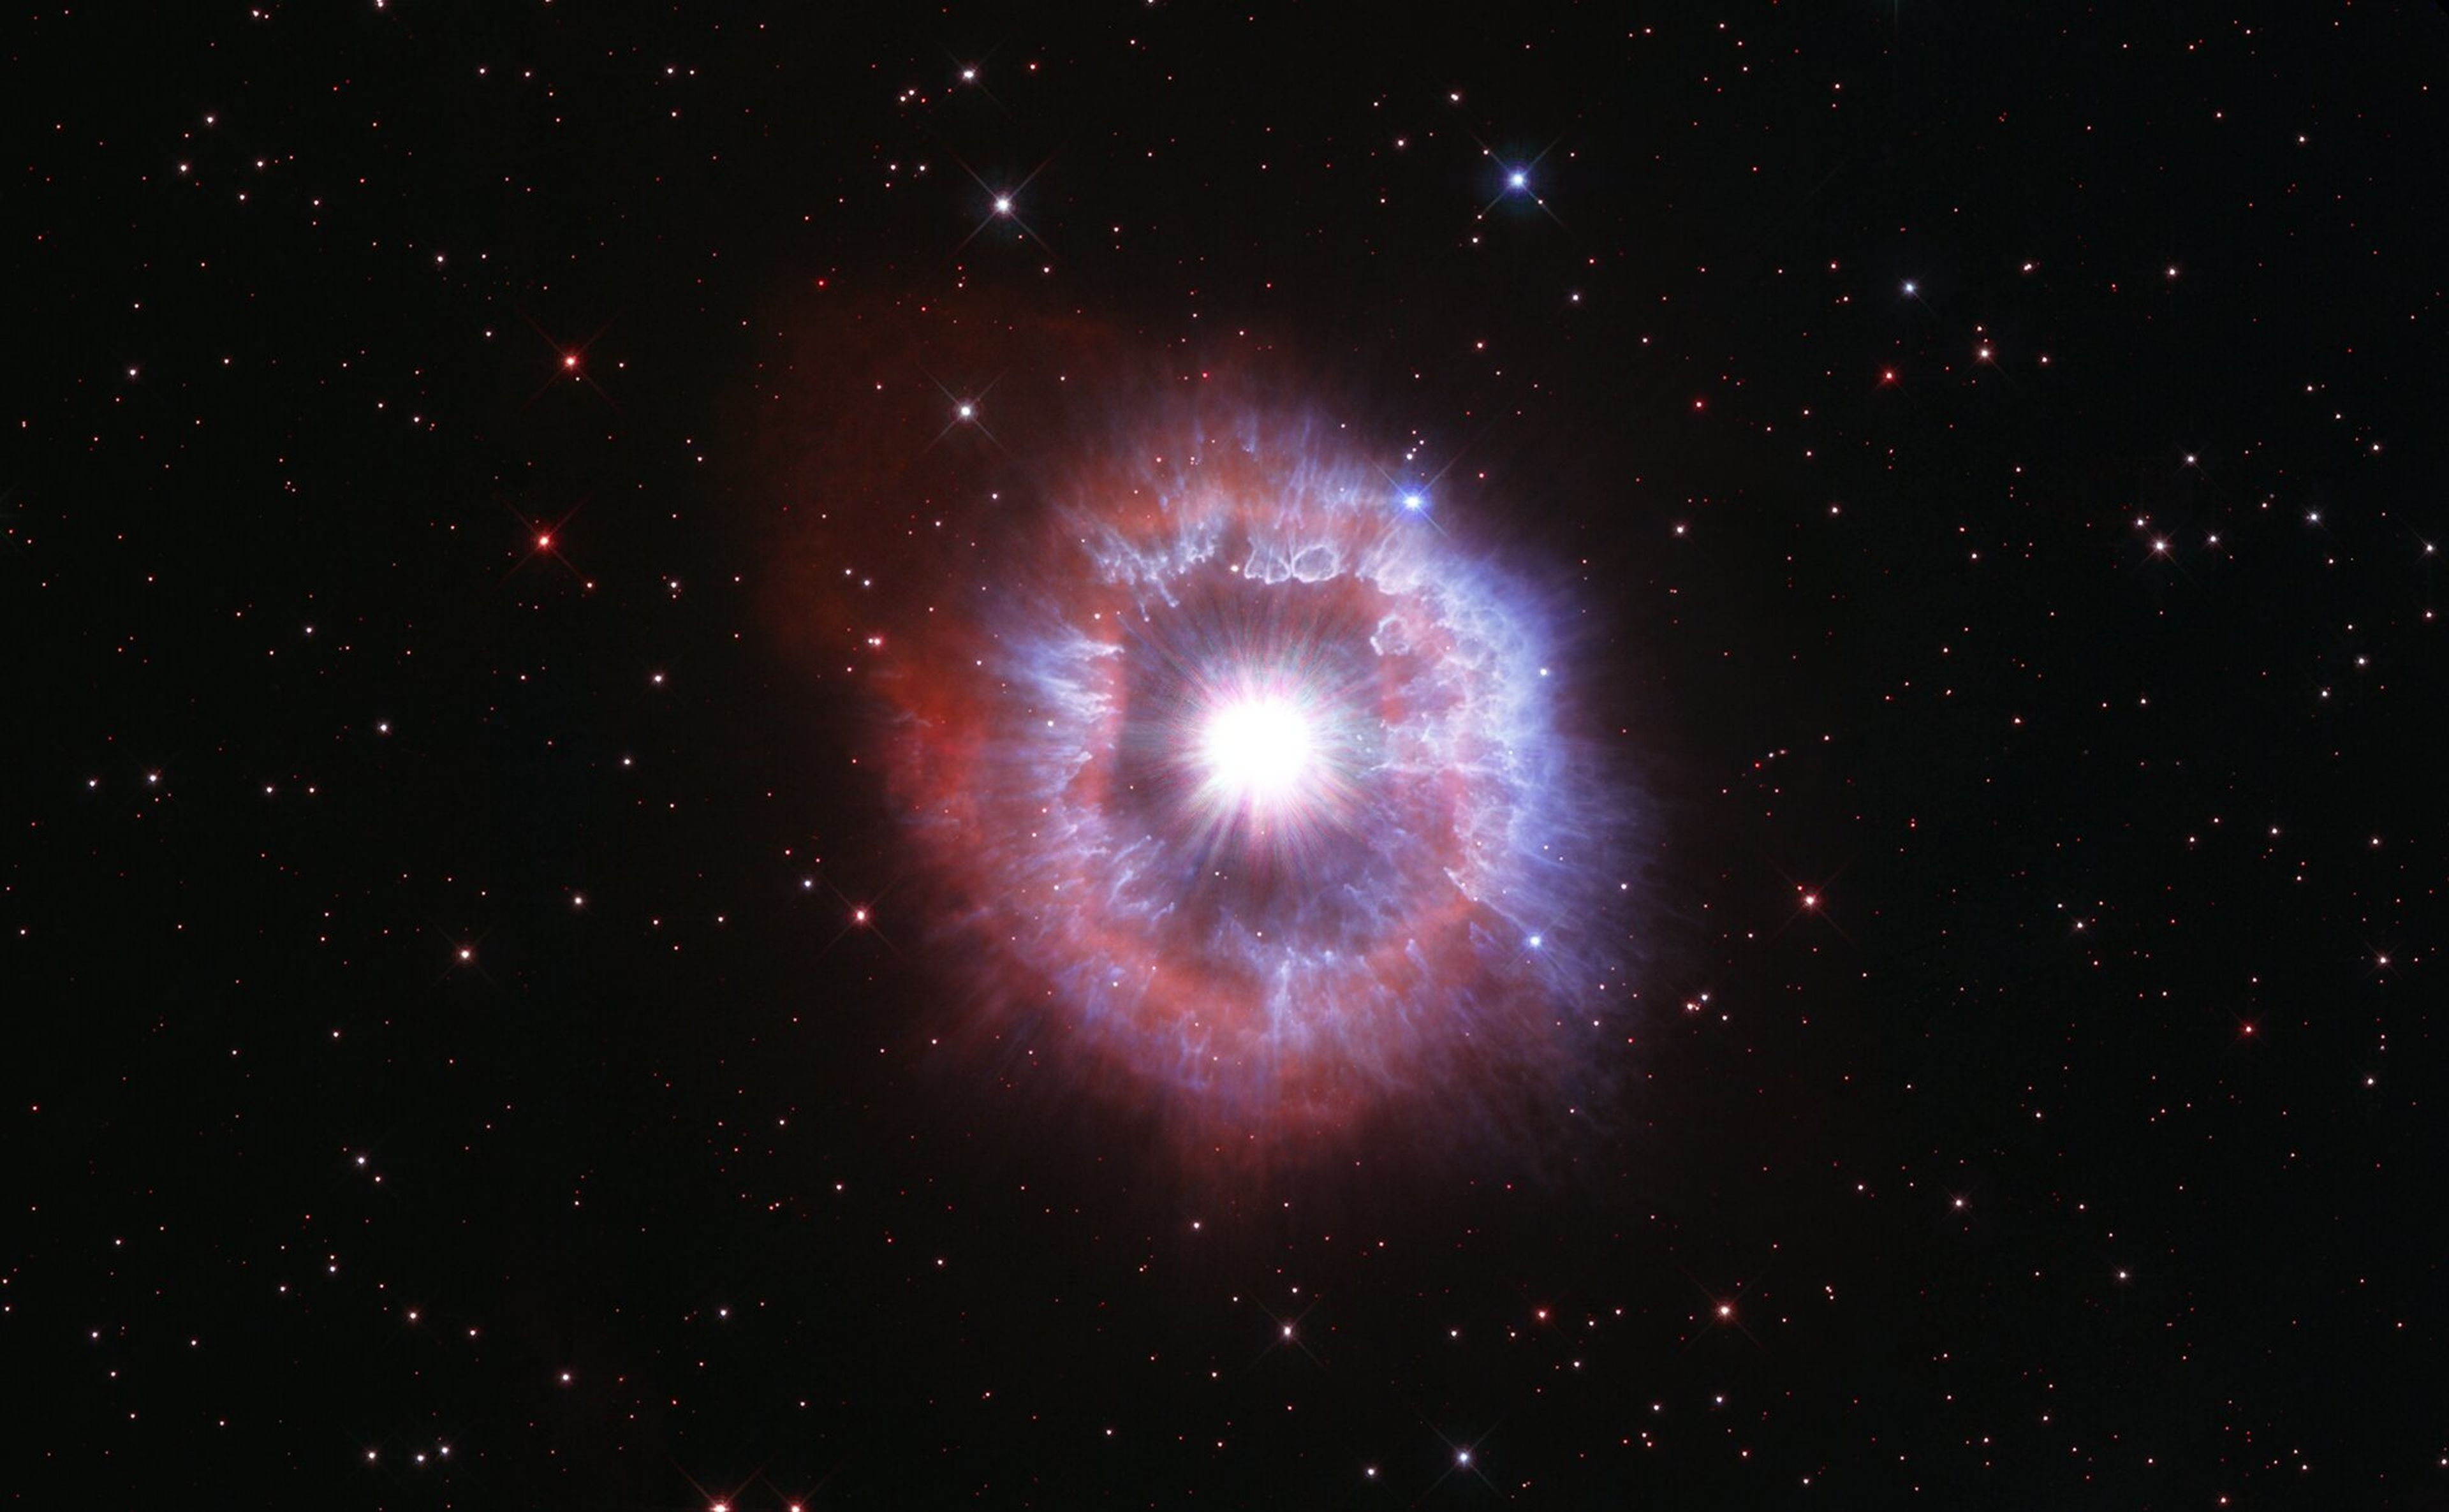 La estrella luminosa azul captada por el Hubble en su 31 aniversario.